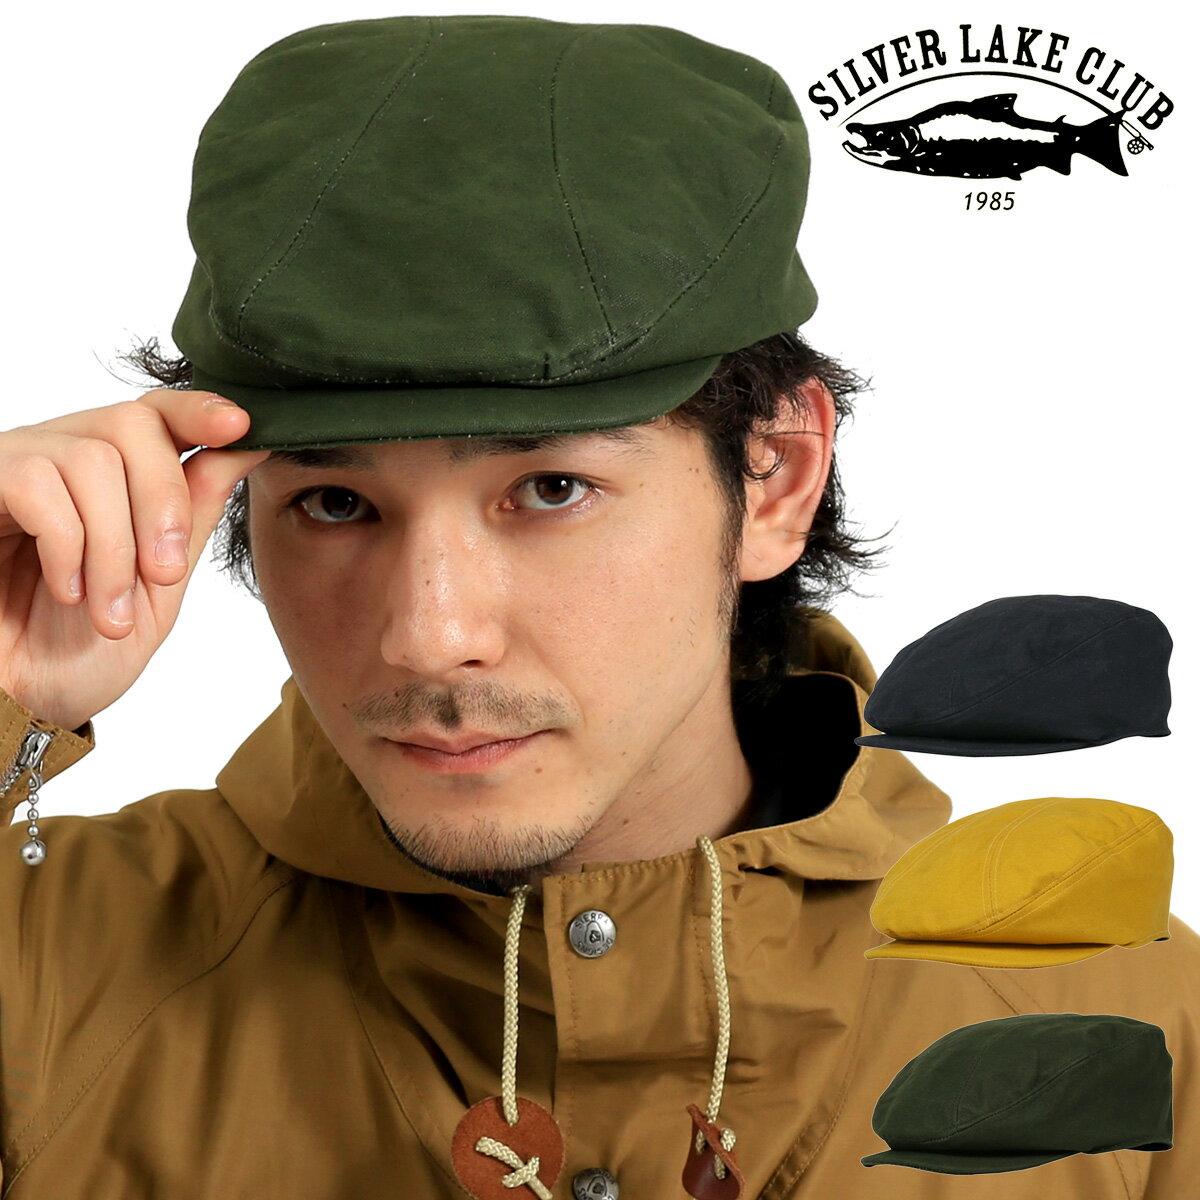 シルバーレイククラブ ハンチング 日本製 9号帆布 メンズ レディース SILVER LAKE CLUB | 帽子 防水性 通気性 当社限定 別注モデル